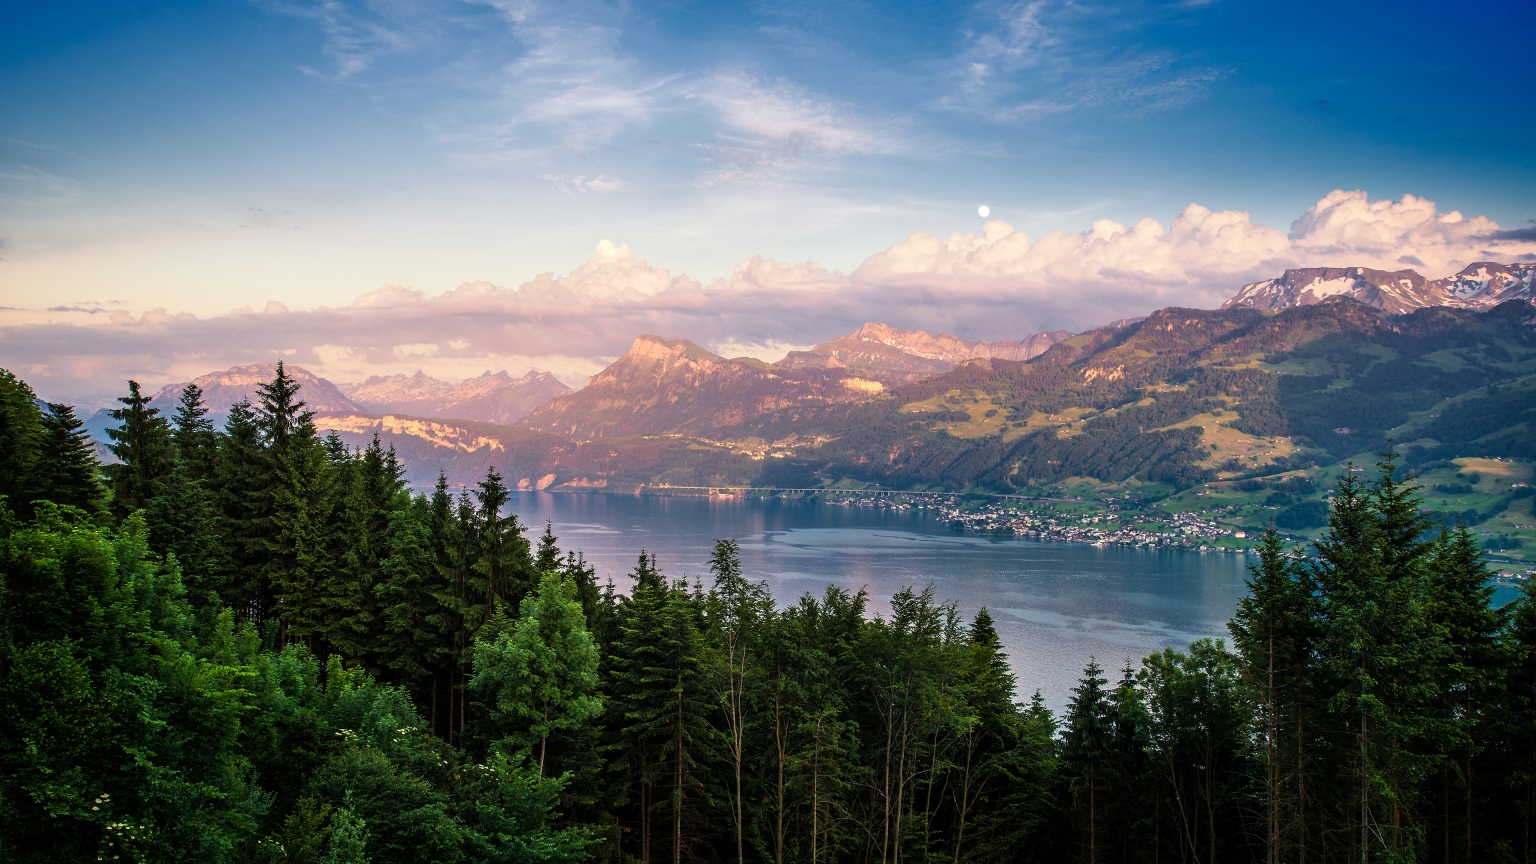 Lake Zurich Landscape for 1536 x 864 HDTV resolution